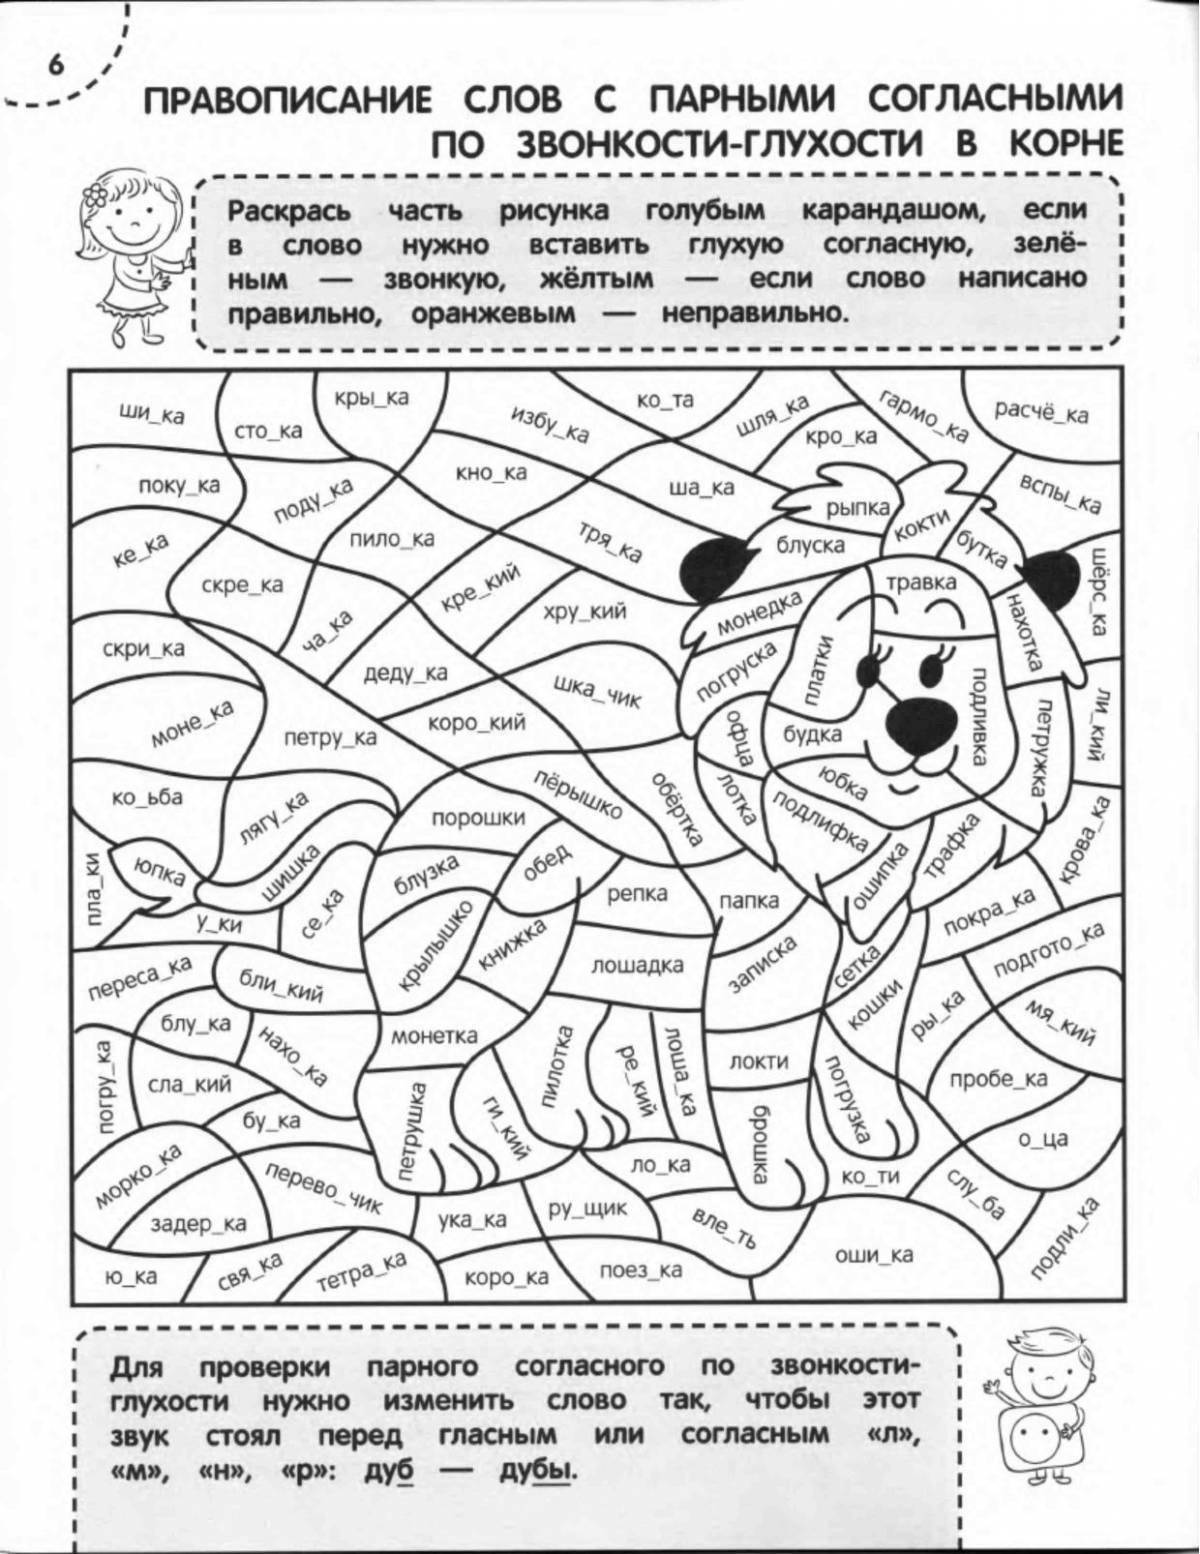 Раскраски-обучалки купить оптом и в розницу в интернет-магазине - ArtoToys.ru.